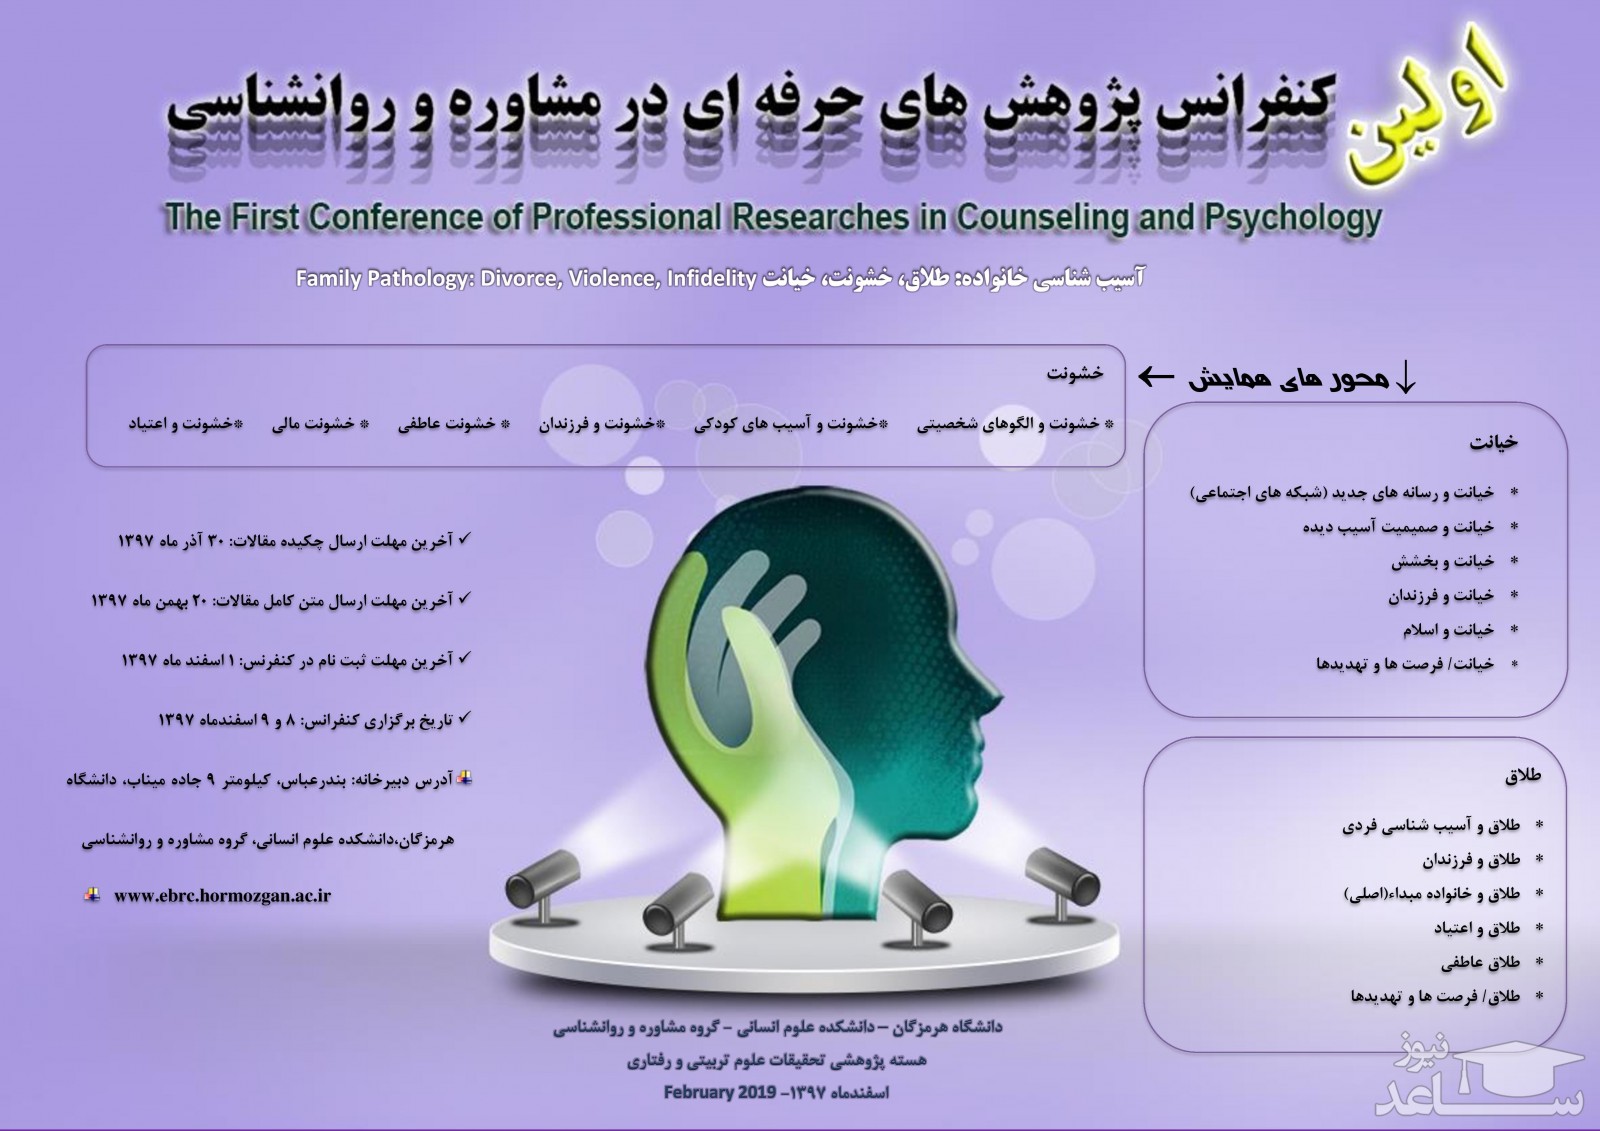 اولین کنفرانس پژوهش های حرفه ای در مشاوره و روان شناسی